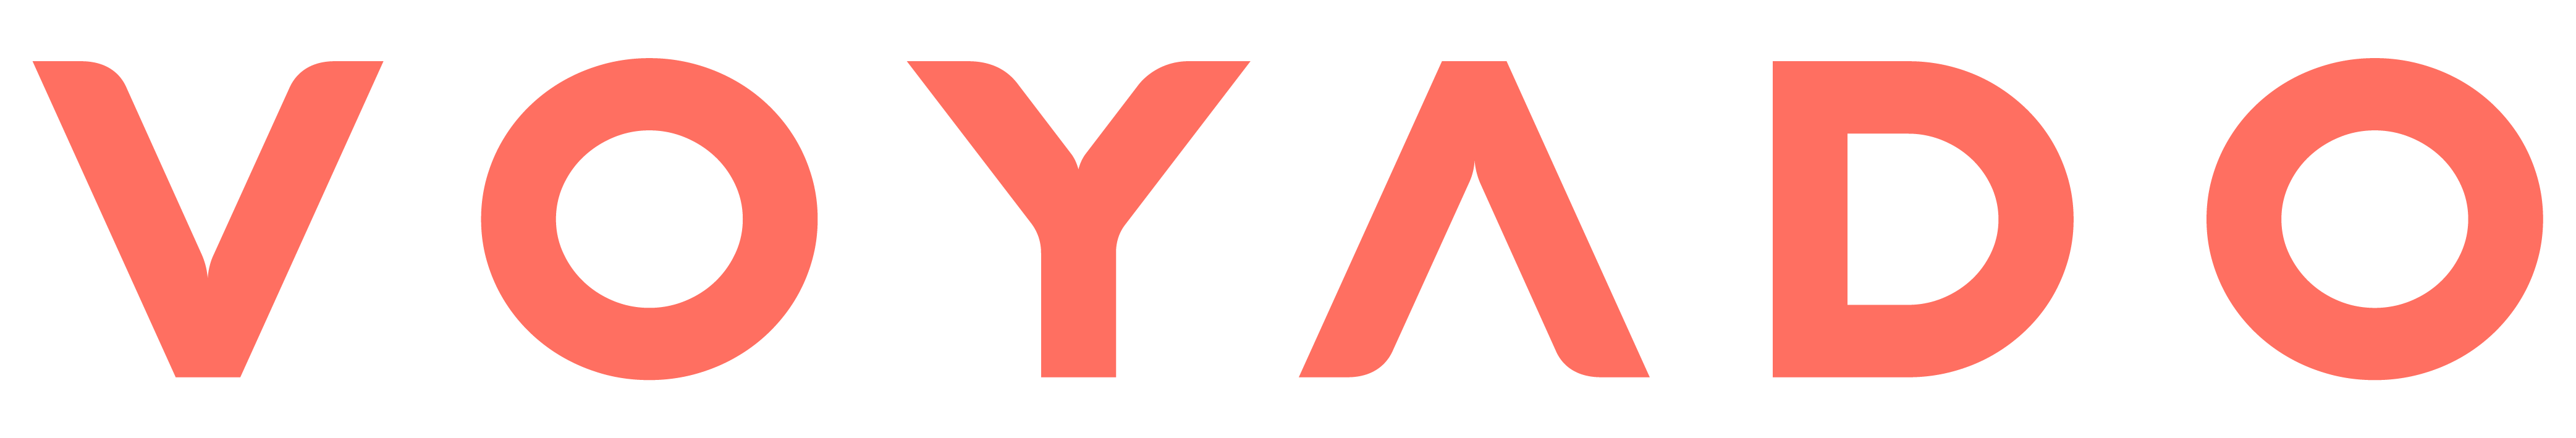 Image: Meet Voyado – Category Sponsors at the UK eCommerce Awards